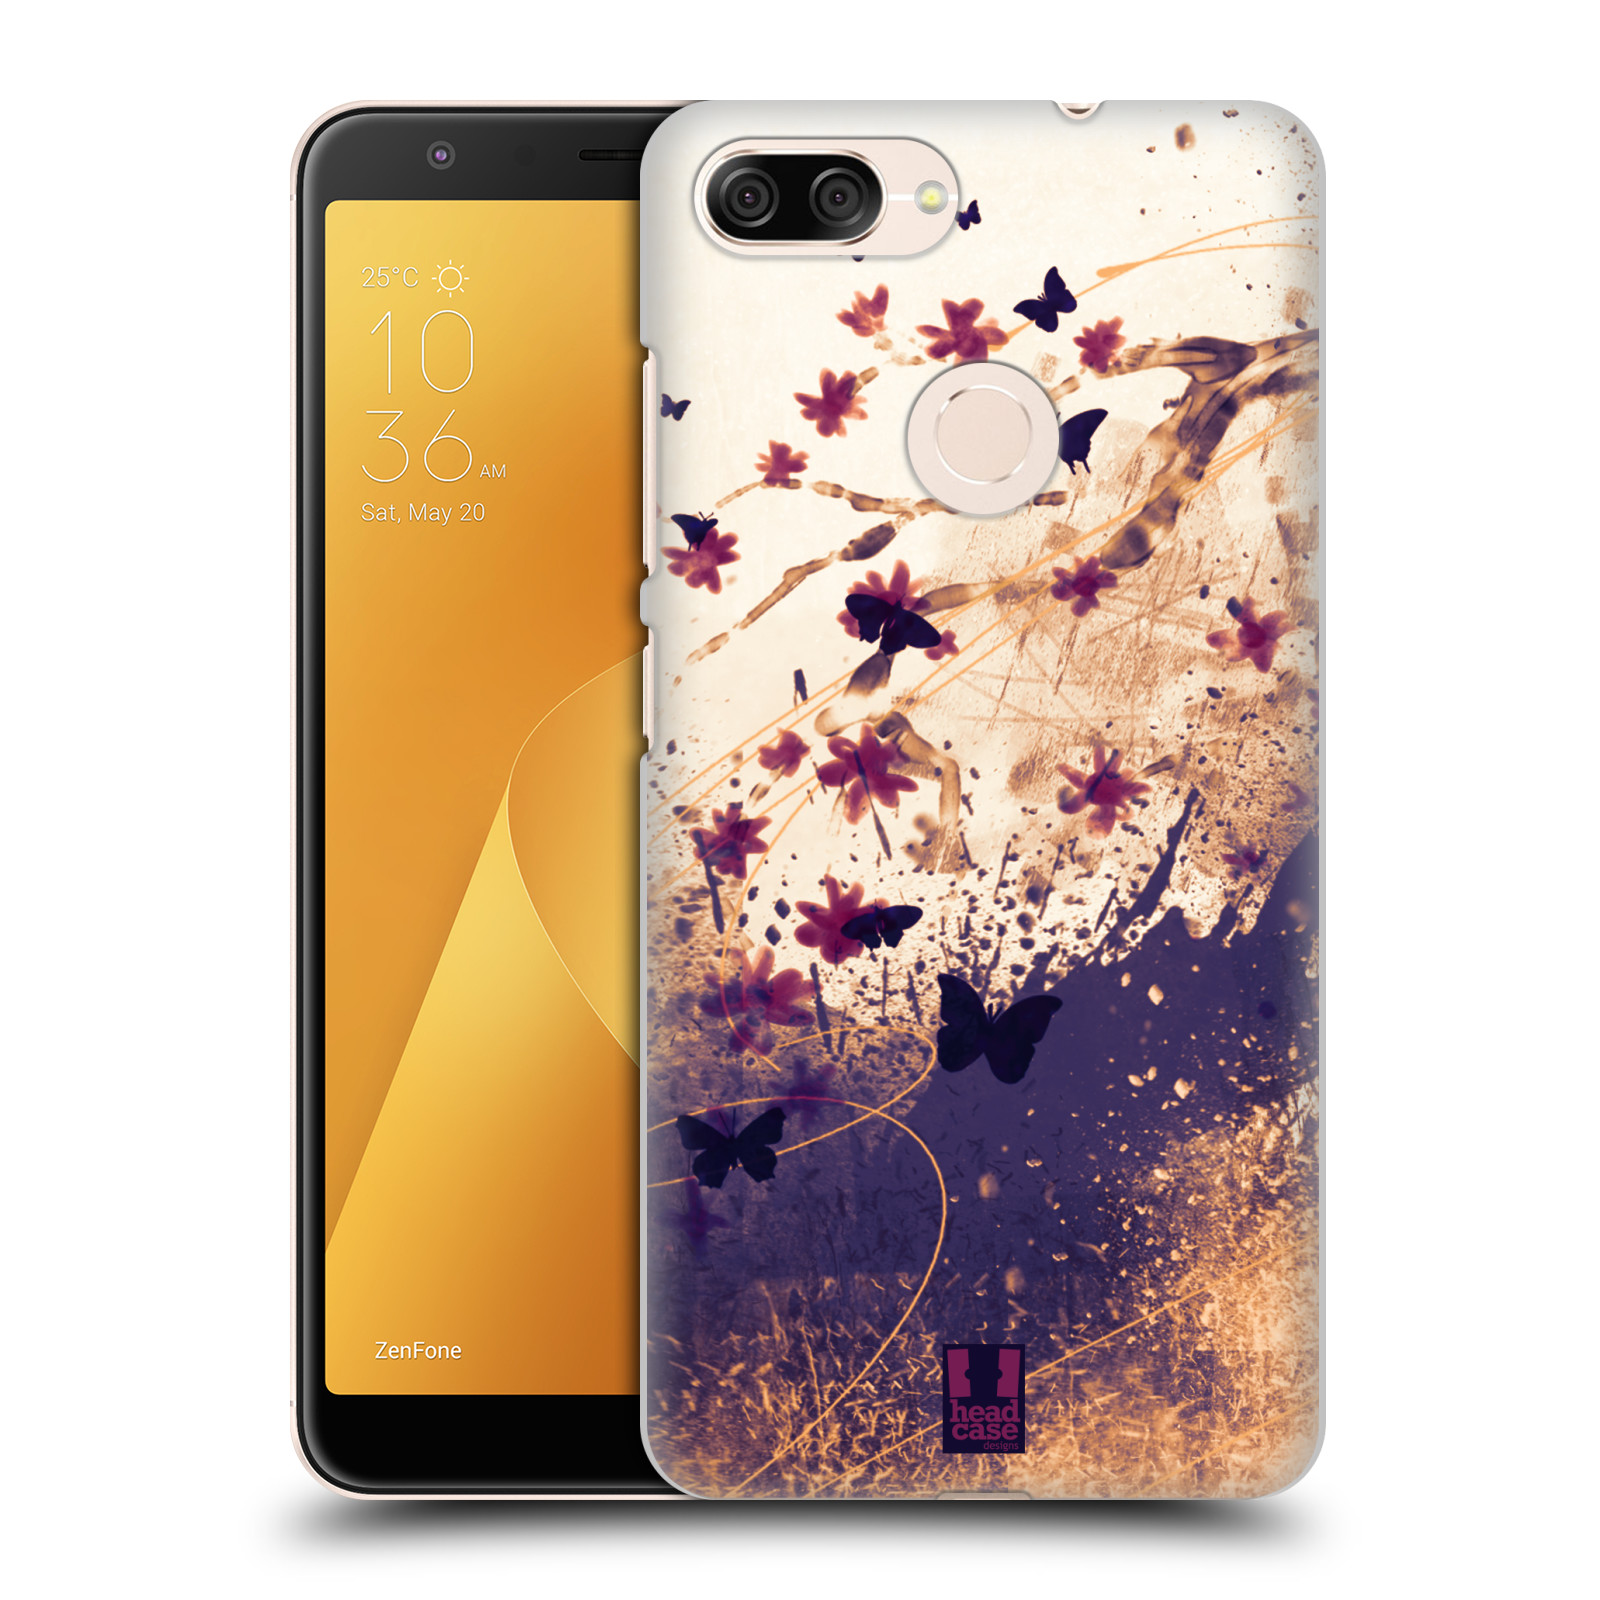 Zadní obal pro mobil Asus Zenfone Max Plus (M1) - HEAD CASE - Barevné květy a motýlci